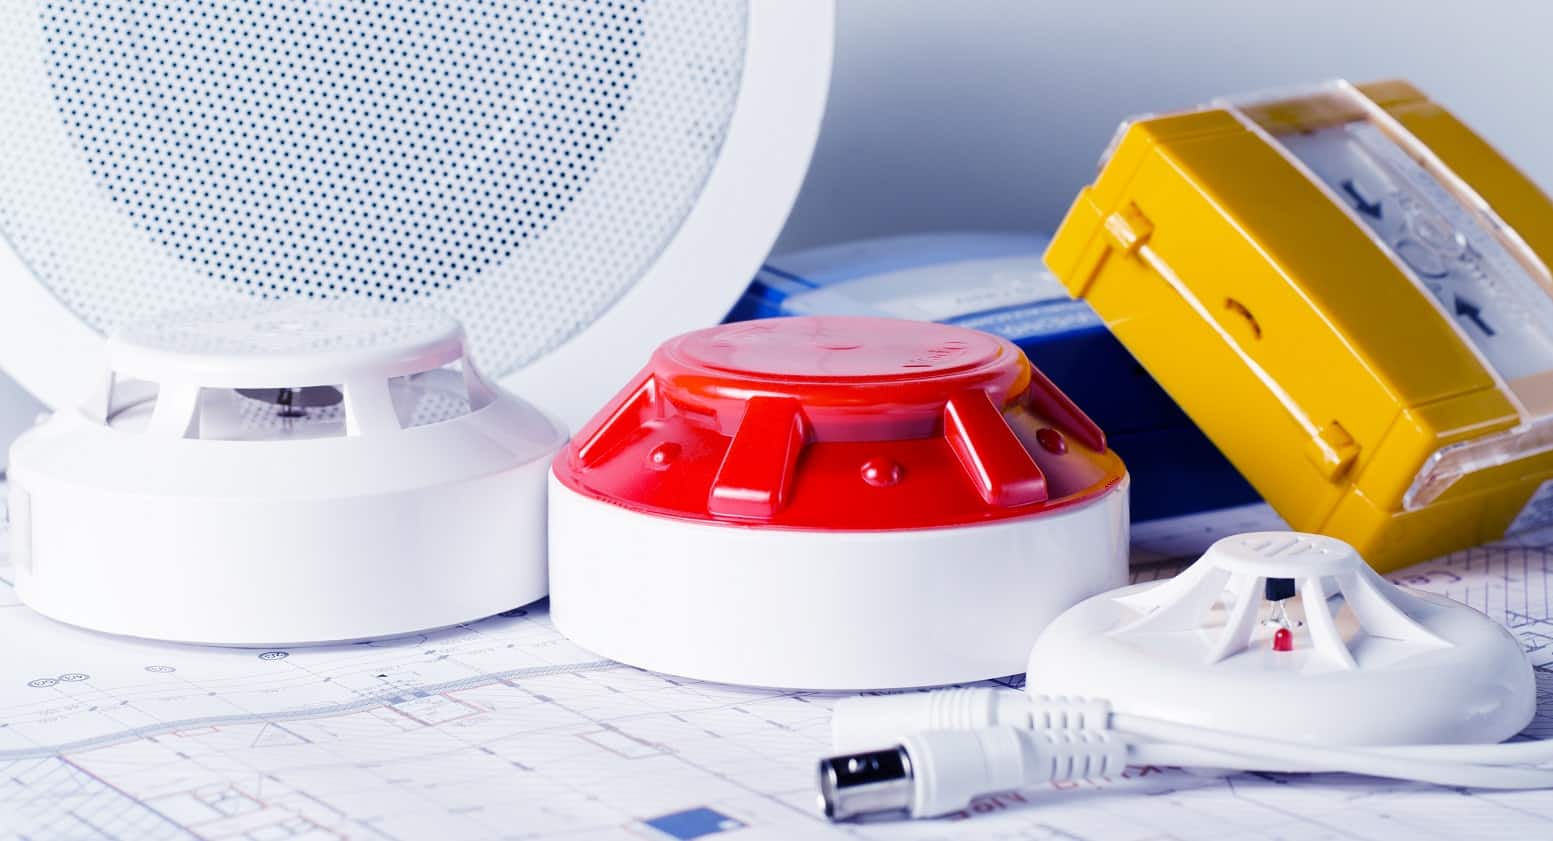 Co2 Detectors 6 Best Carbon Monoxide Detectors Of 2023 Reviews And Buyers Guide 6036